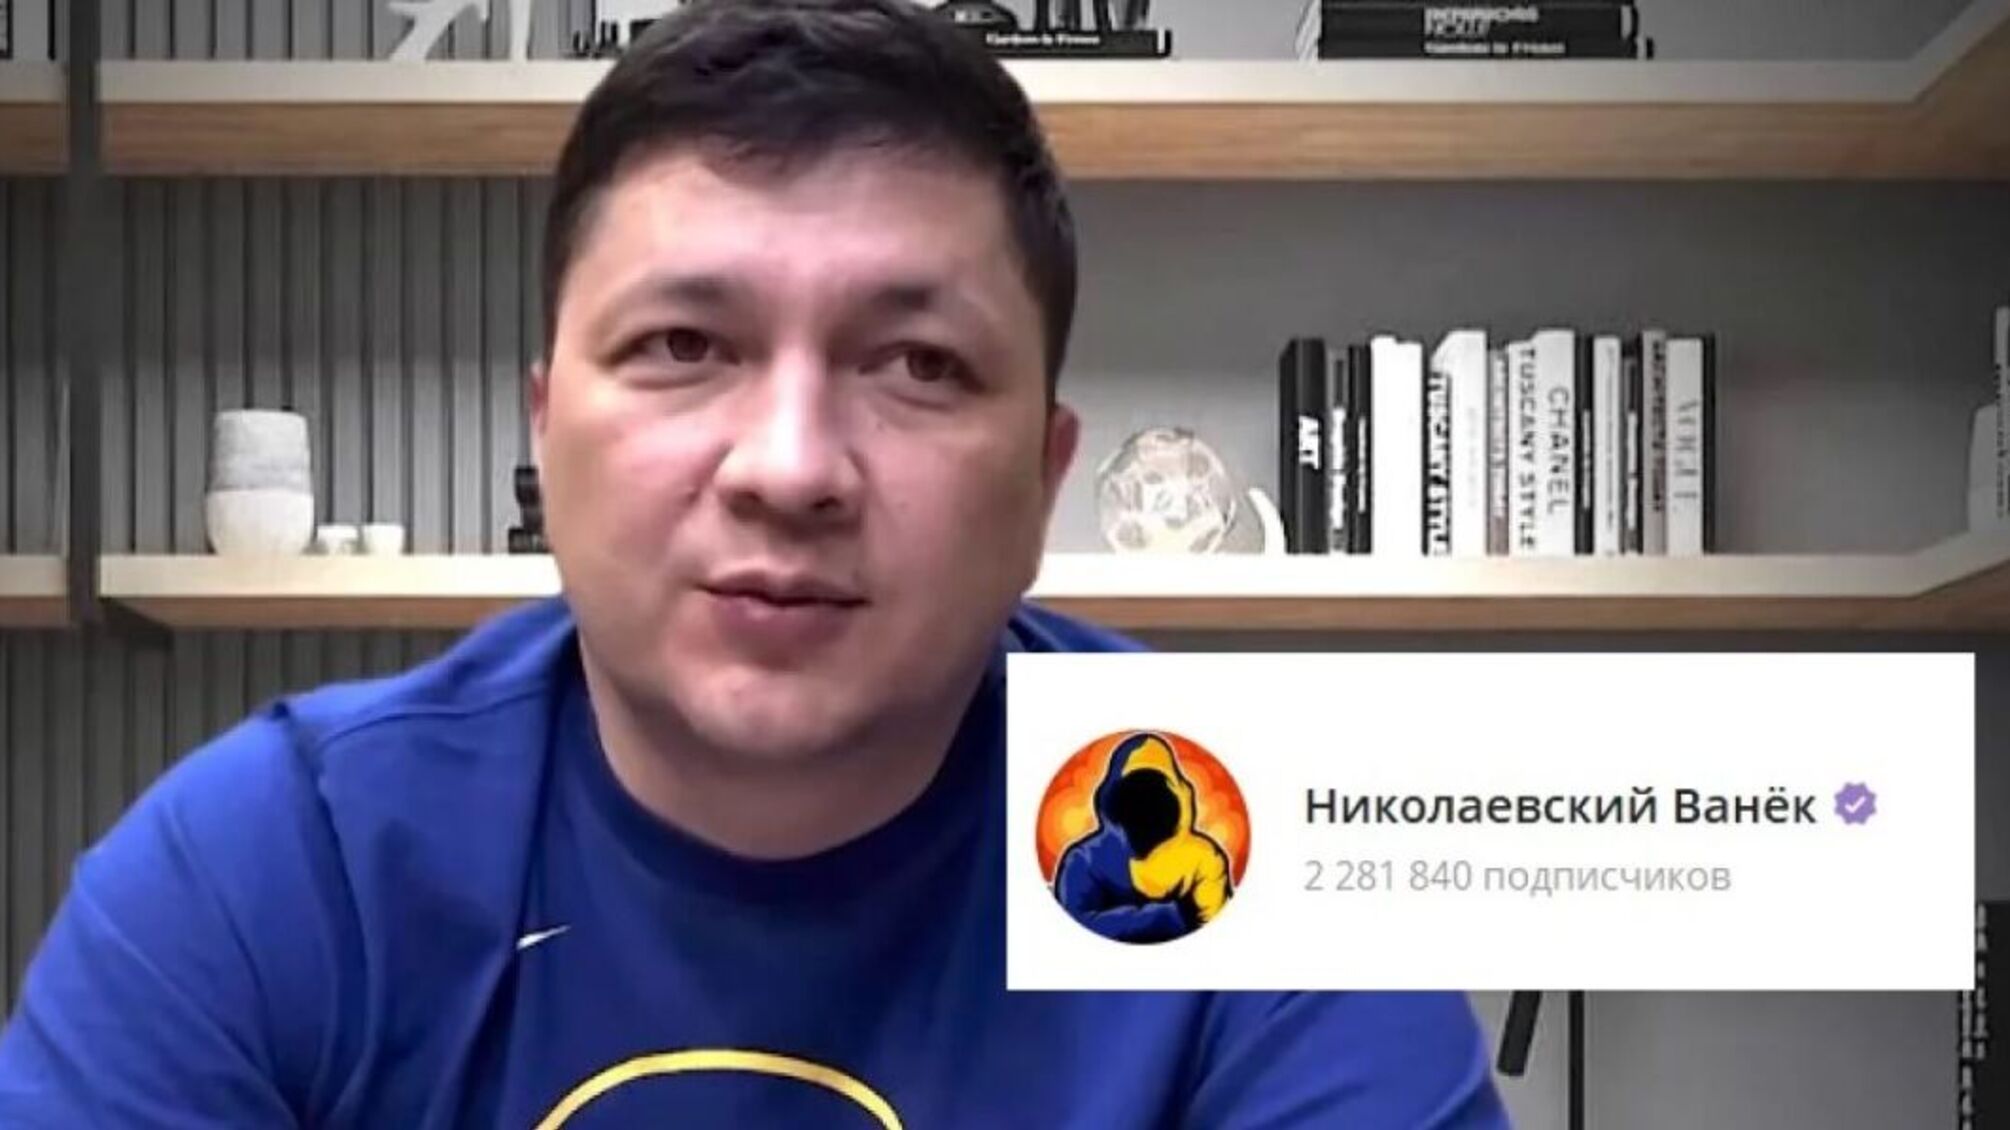 Виталий Ким сотрудничает с администратором популярного Telegram-канала 'Николаевский Ванек'